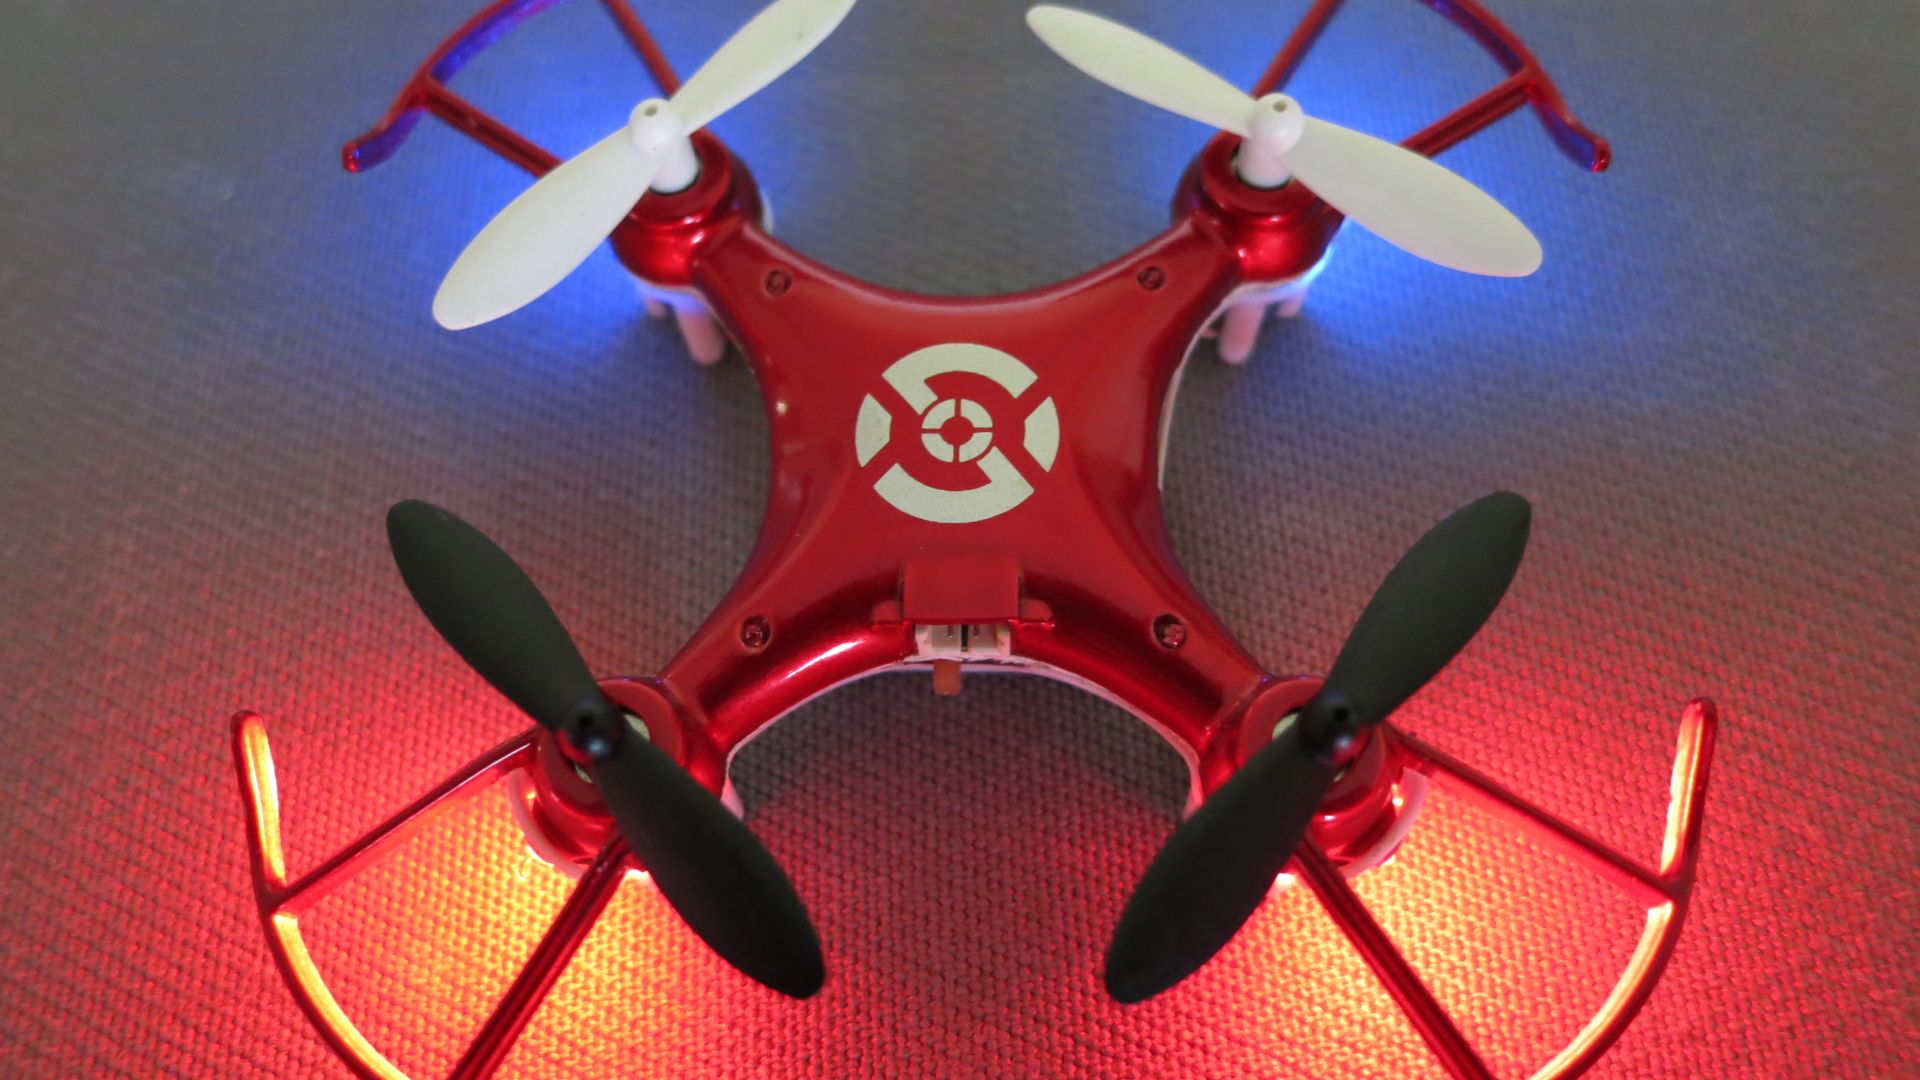 Mini Quadcopter Wallpaper Hi Tech Drones X6 Nano